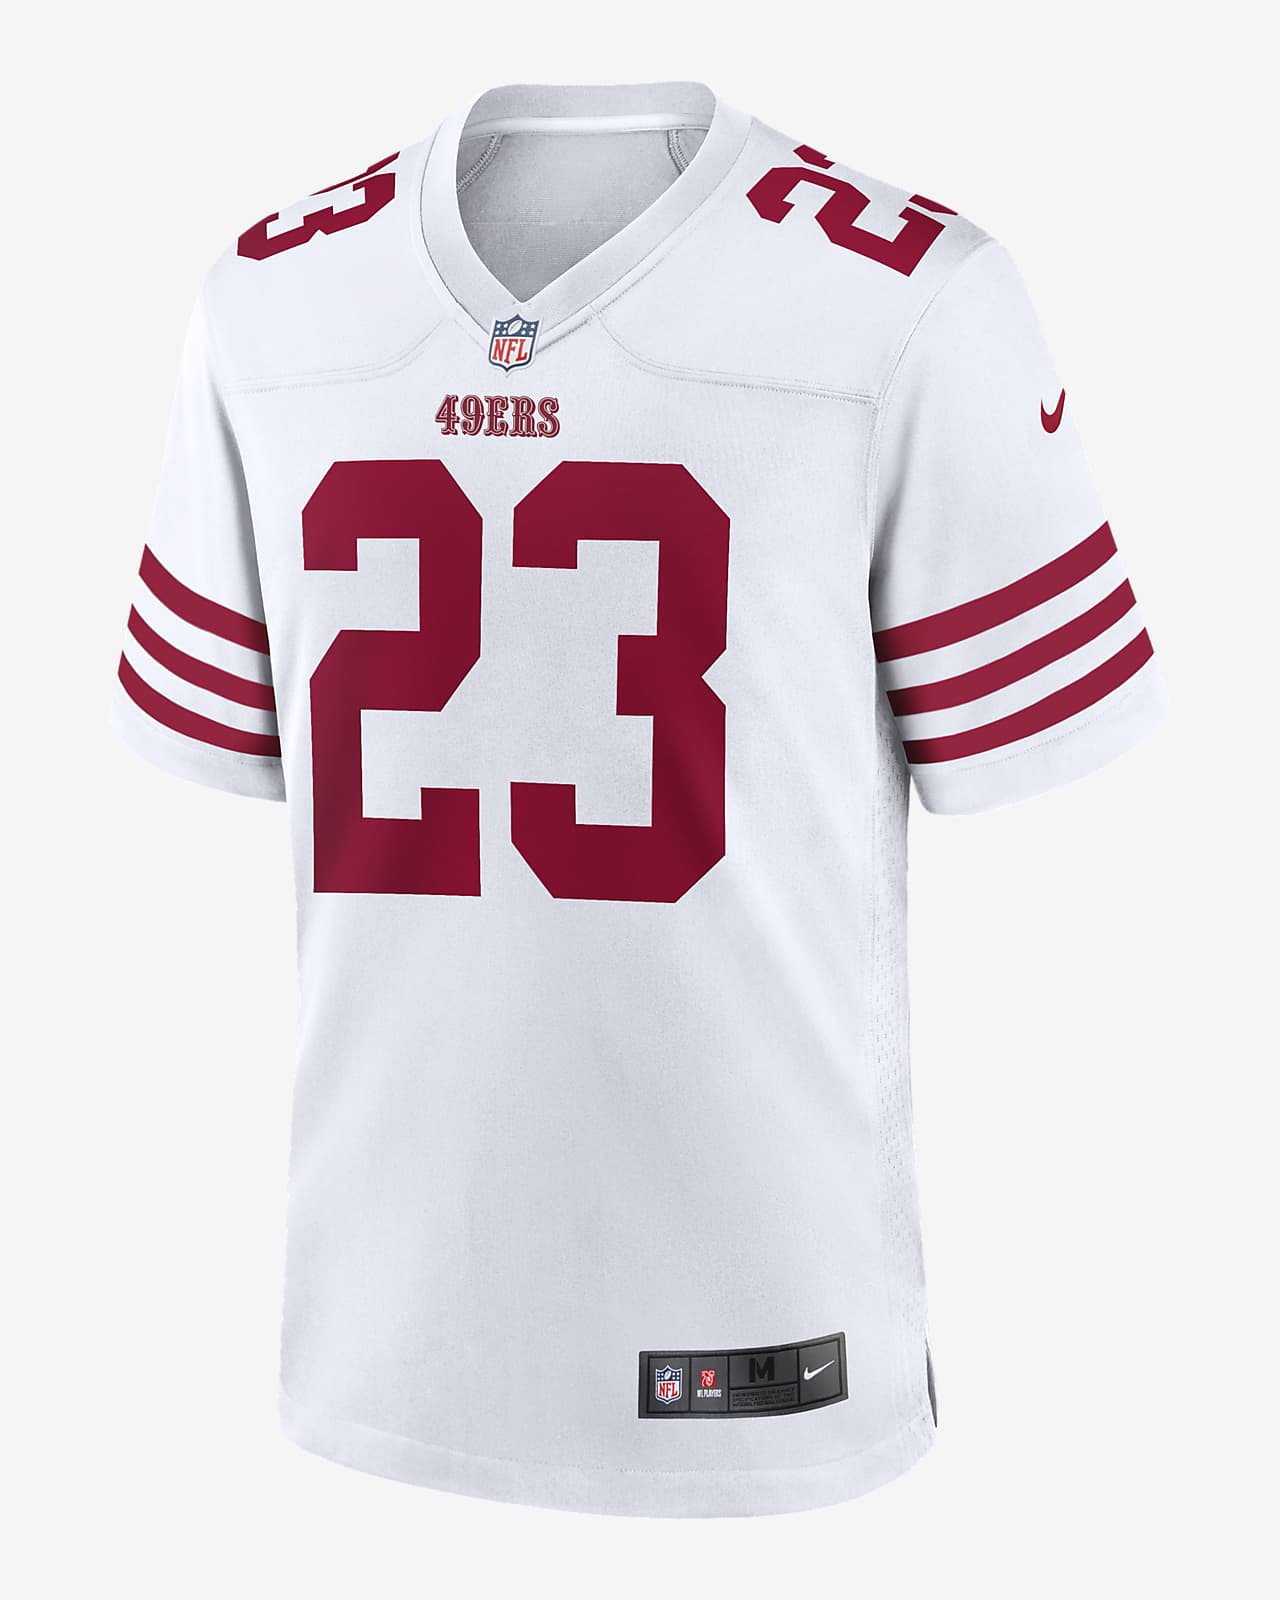 Jersey de fútbol americano para hombre NFL San 49ers (Christian Nike.com